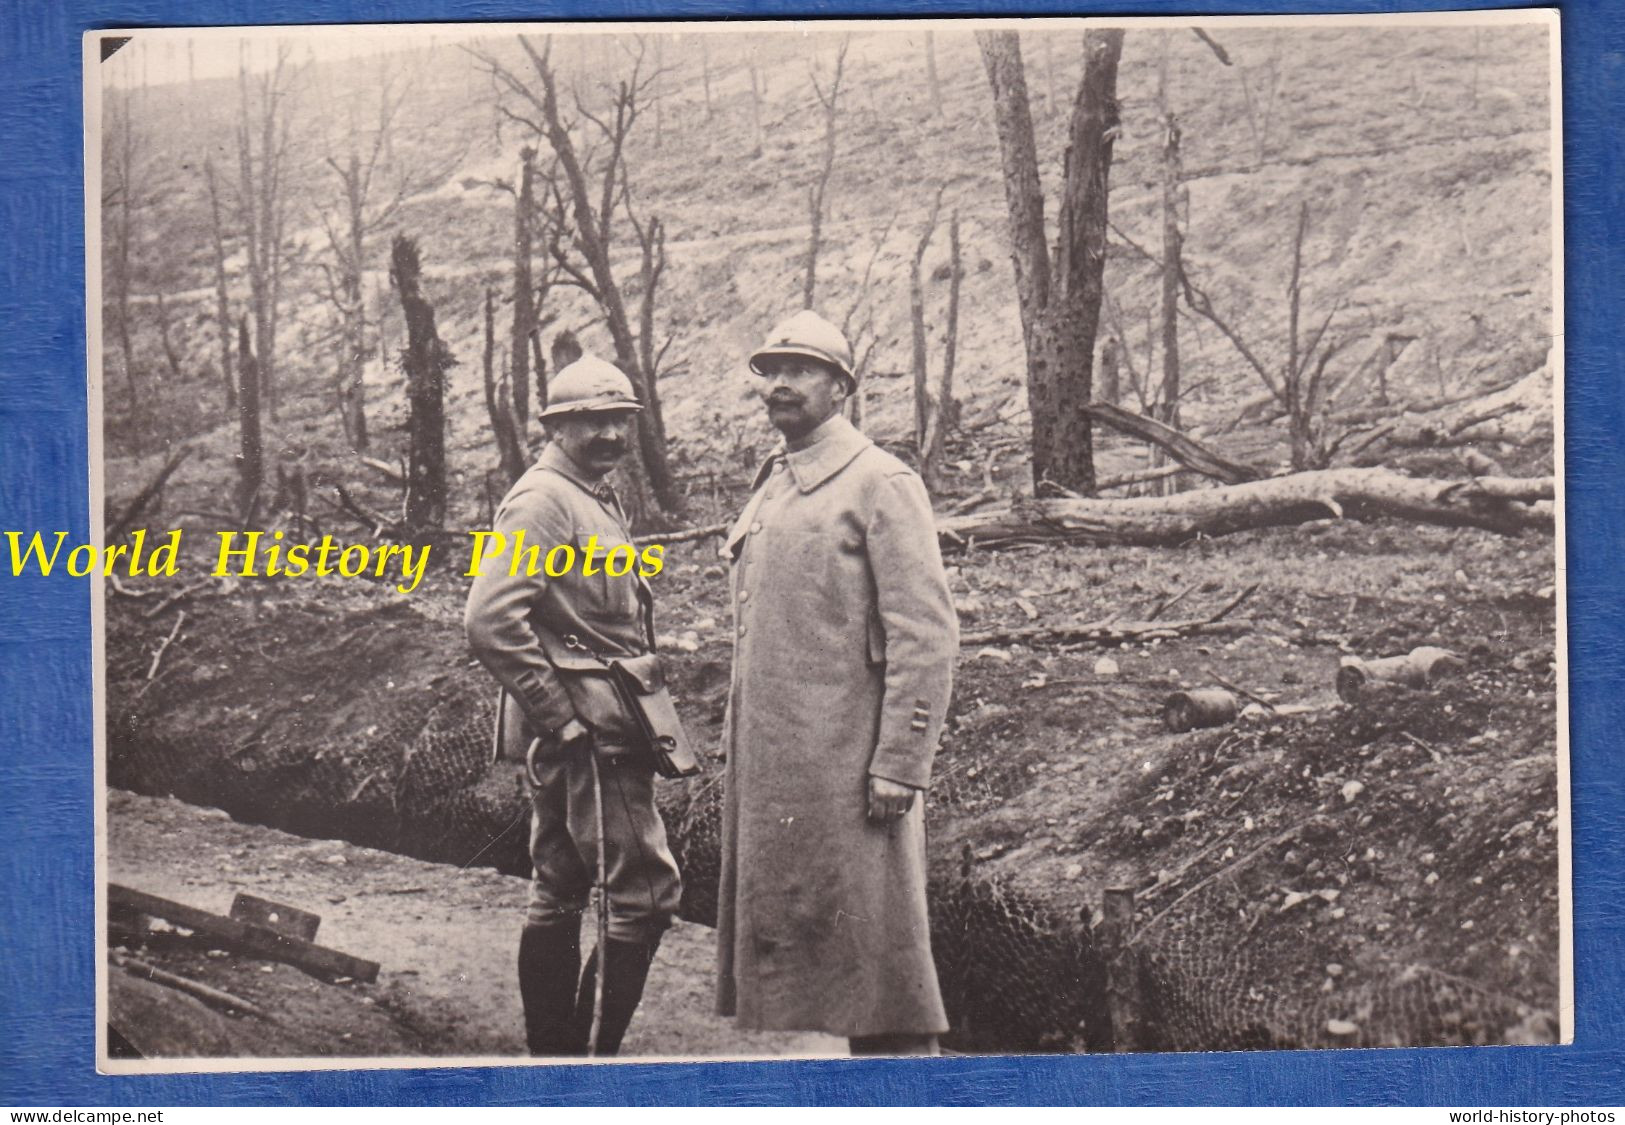 Retirage Ancien D'une Photo De 1916 - TAVANNES P. VERDUN Lieutenant Colonel BOULLE 222e Régiment D' Infanterie WW1 Poilu - Guerra, Militari